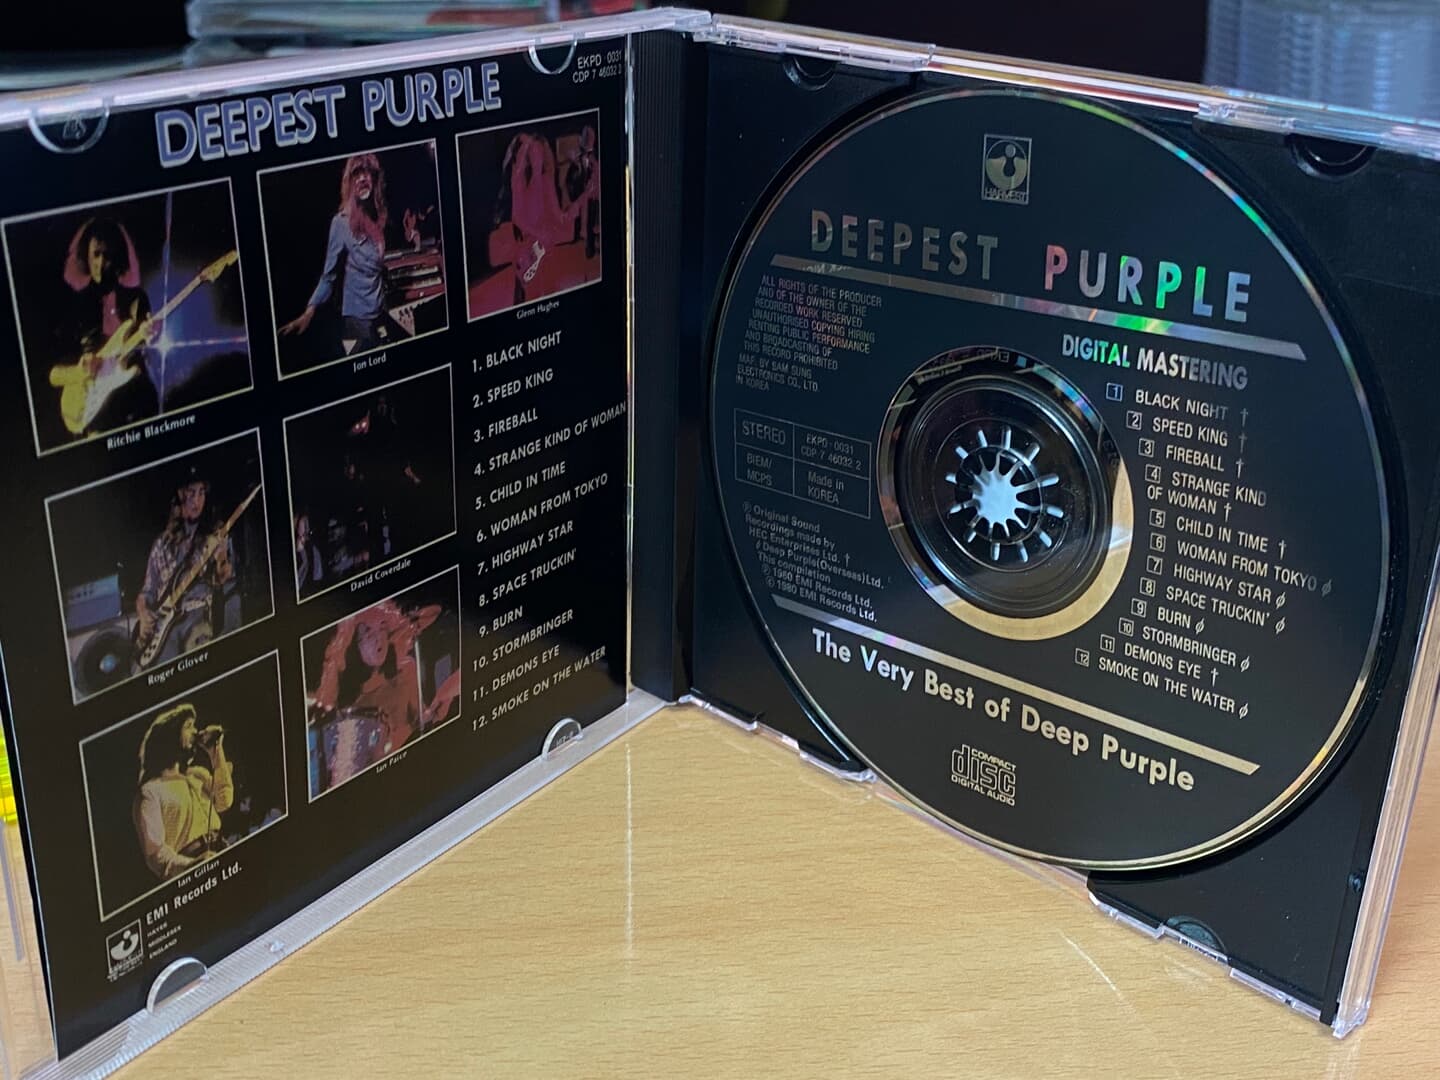 딥 퍼플 - Deep Purple - Deepest Purple The Vest Of Deep Purple